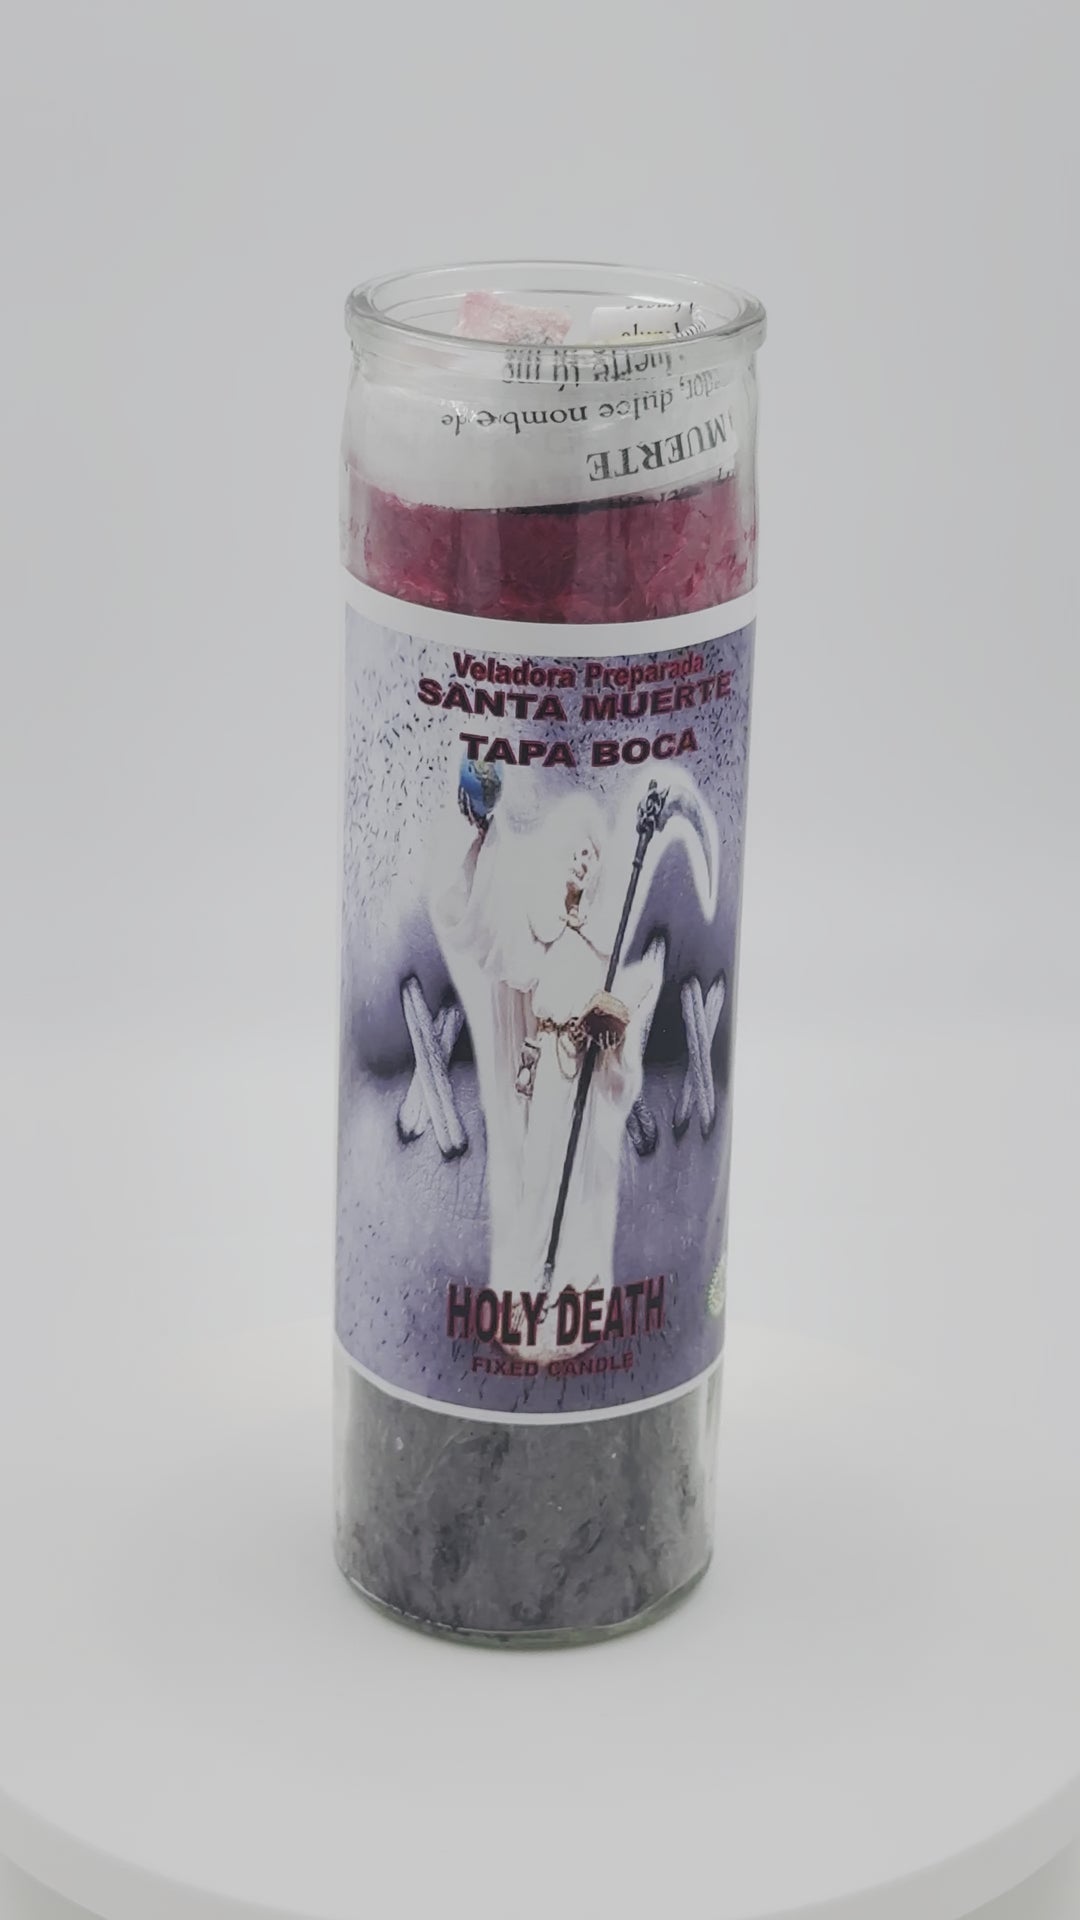 HOLY DEATH SHUT UP(SANTISIMA MUERTE TAPA BOCA) -Palm Wax Candle/Vela